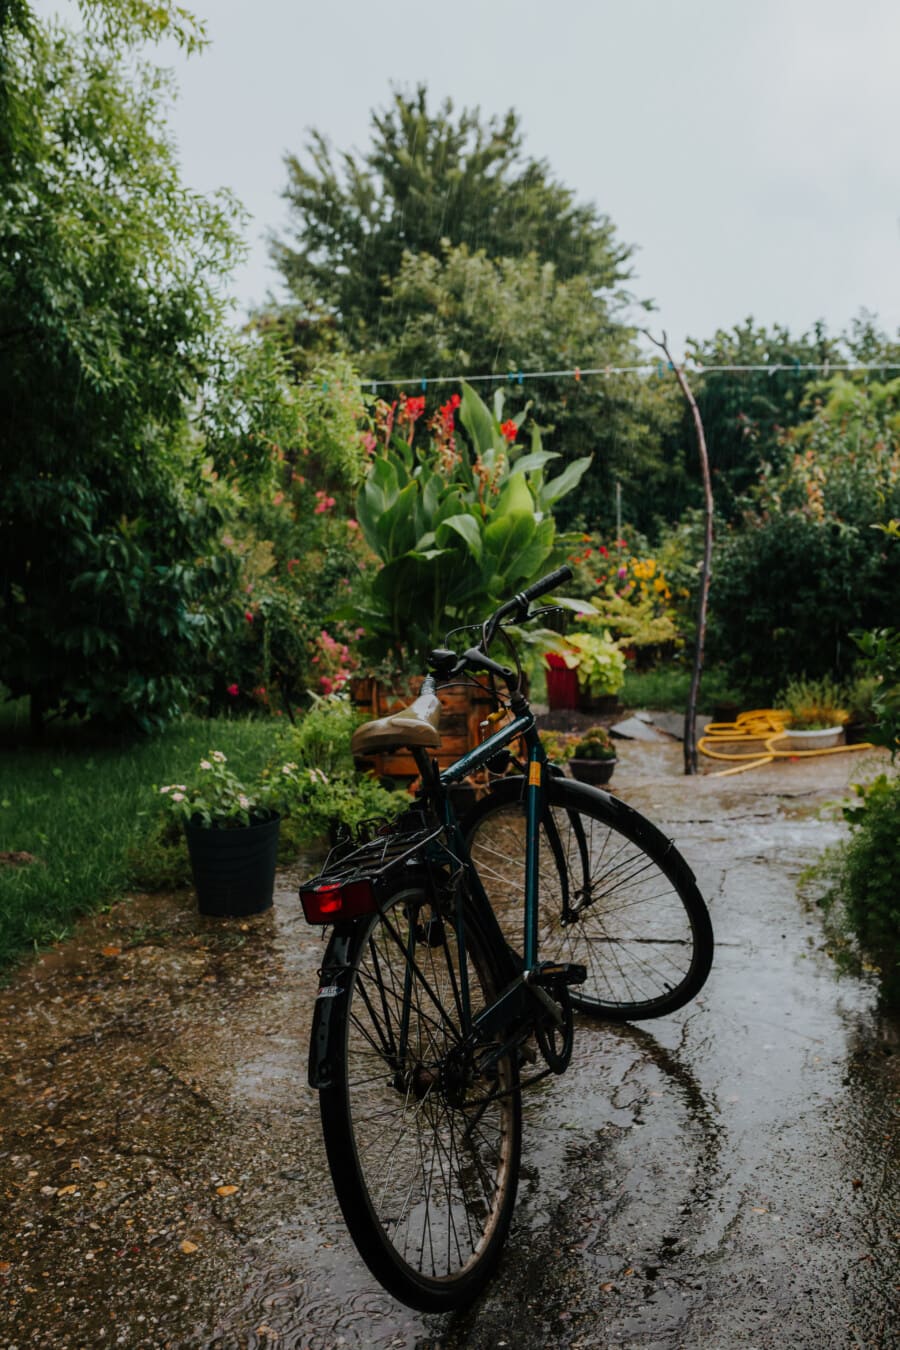 จักรยาน, สวนดอกไม้, สนามหลังบ้าน, ฝน, เปียก, ฤดูฝน, จักรยาน, ล้อ, ต้นไม้, ดอกไม้